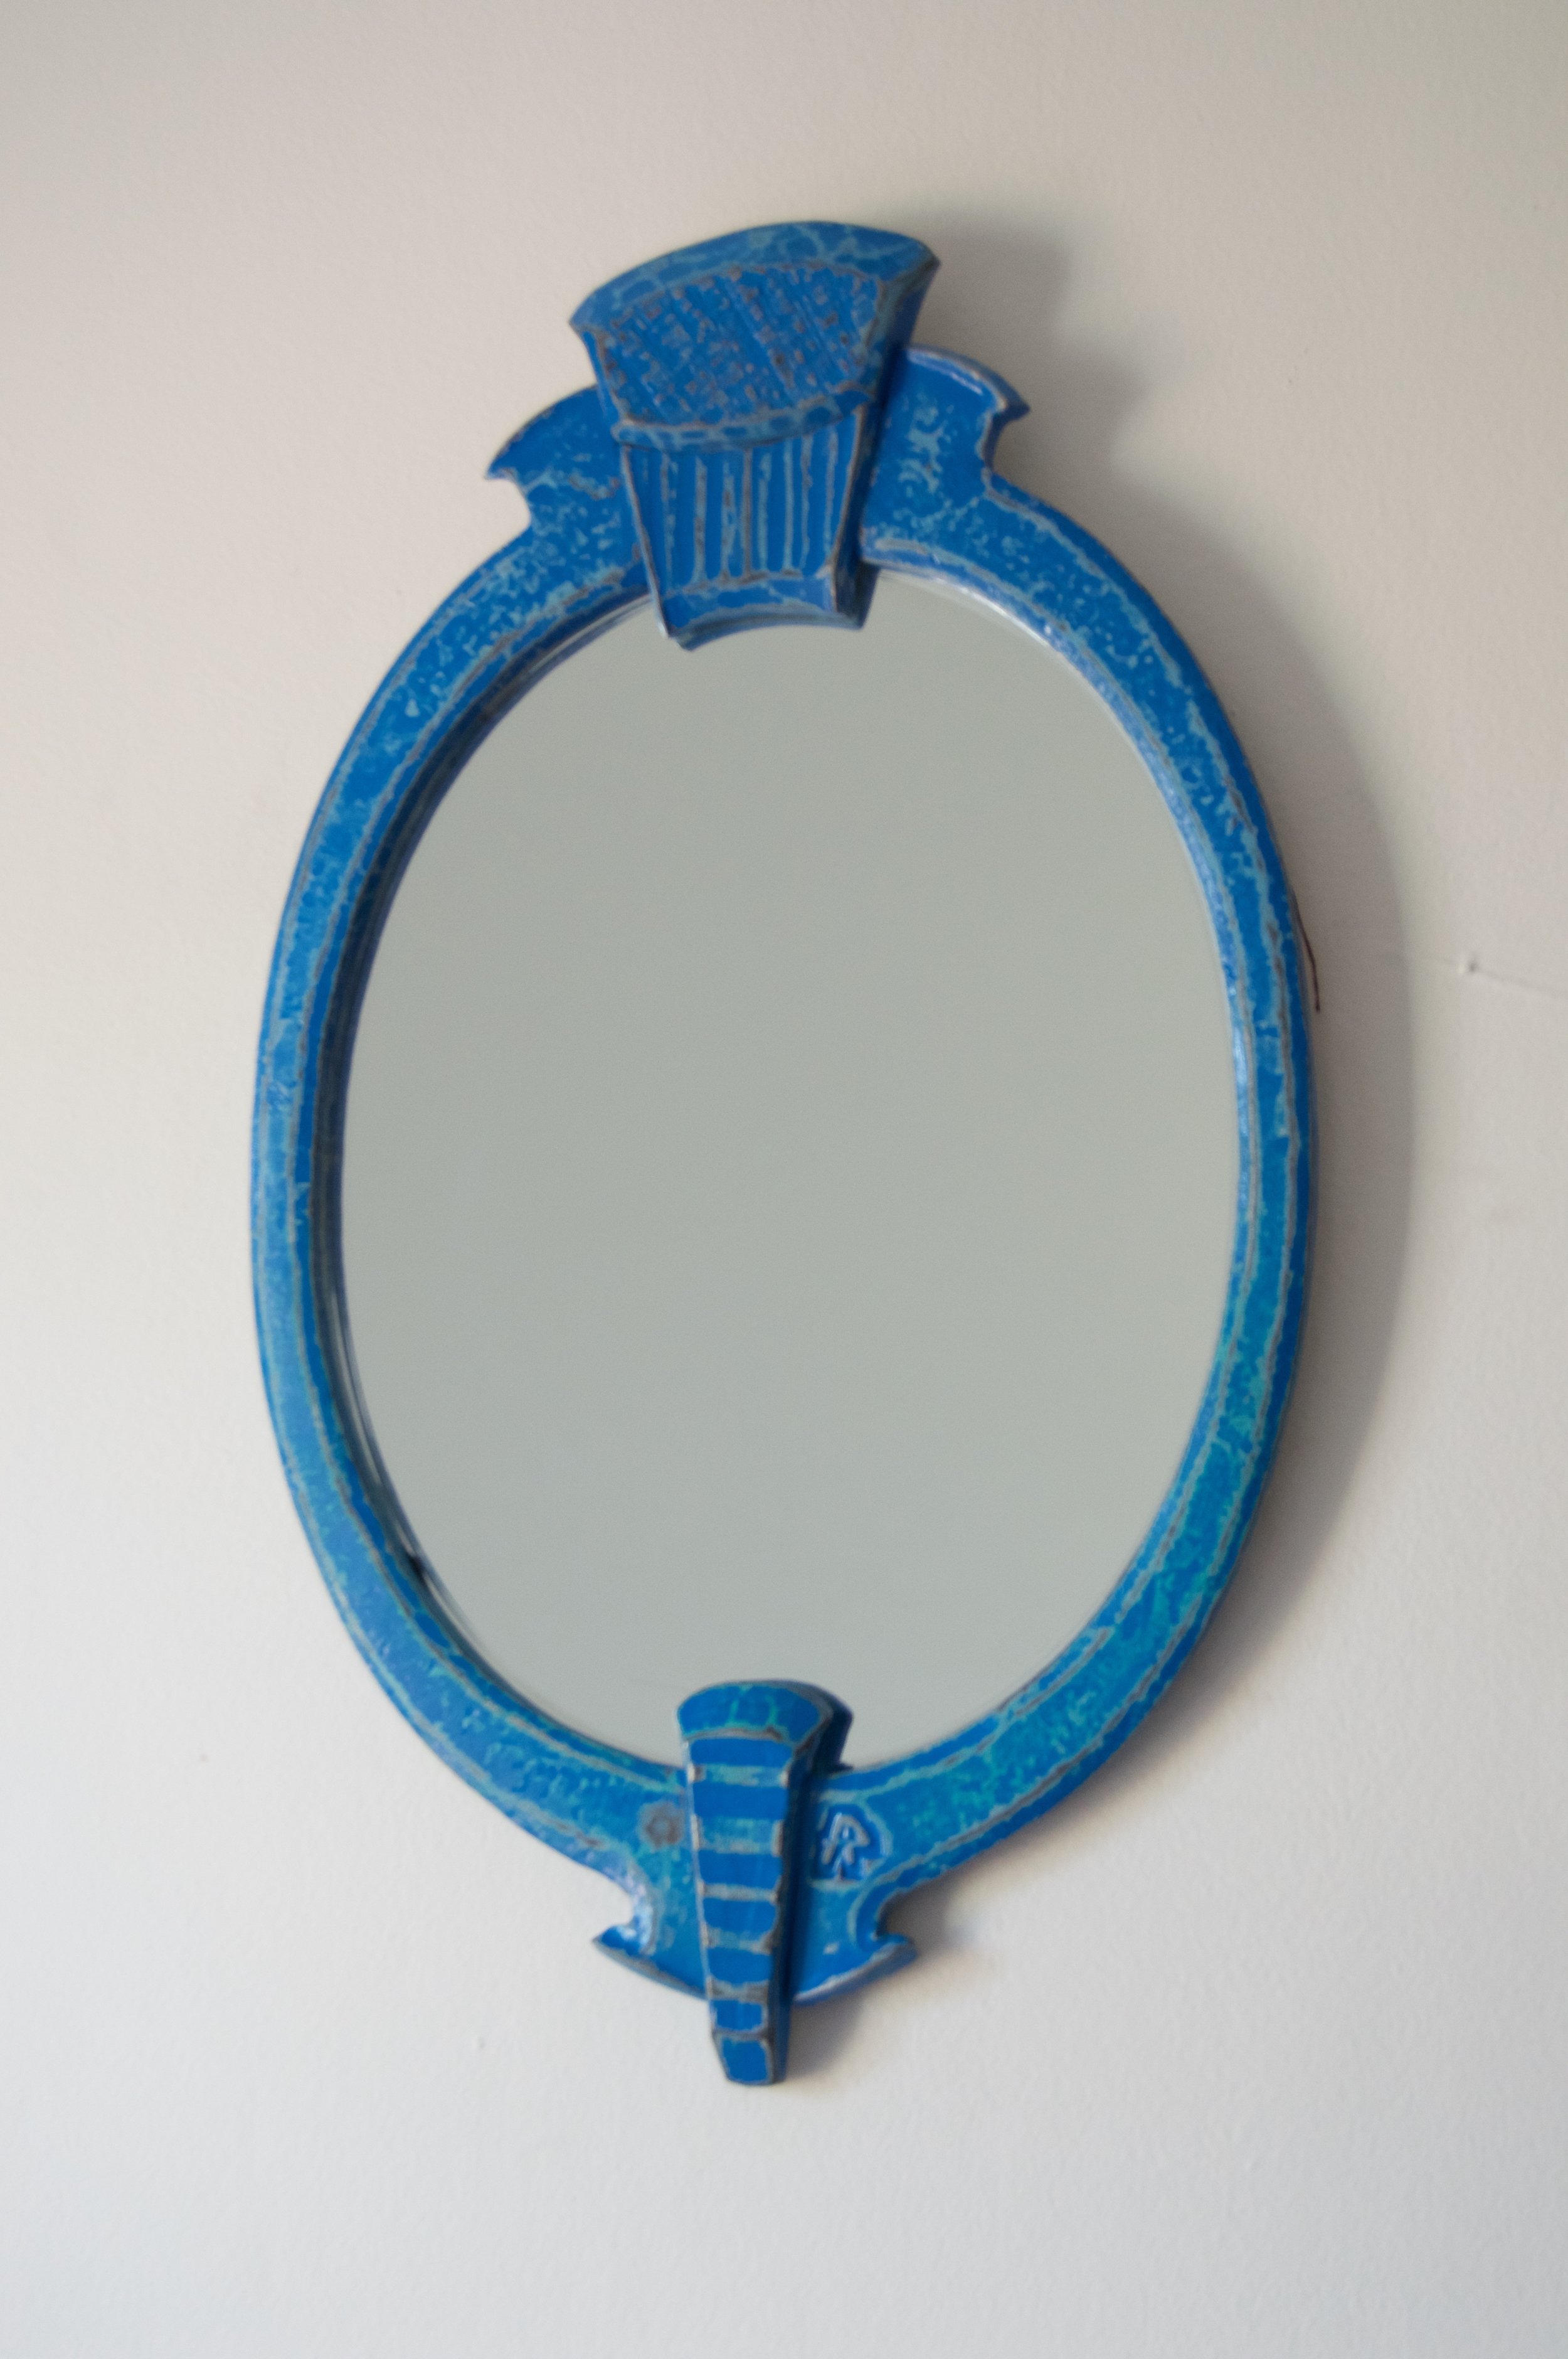  Oval Mirror, mild steel, paint, mirror, 2016 